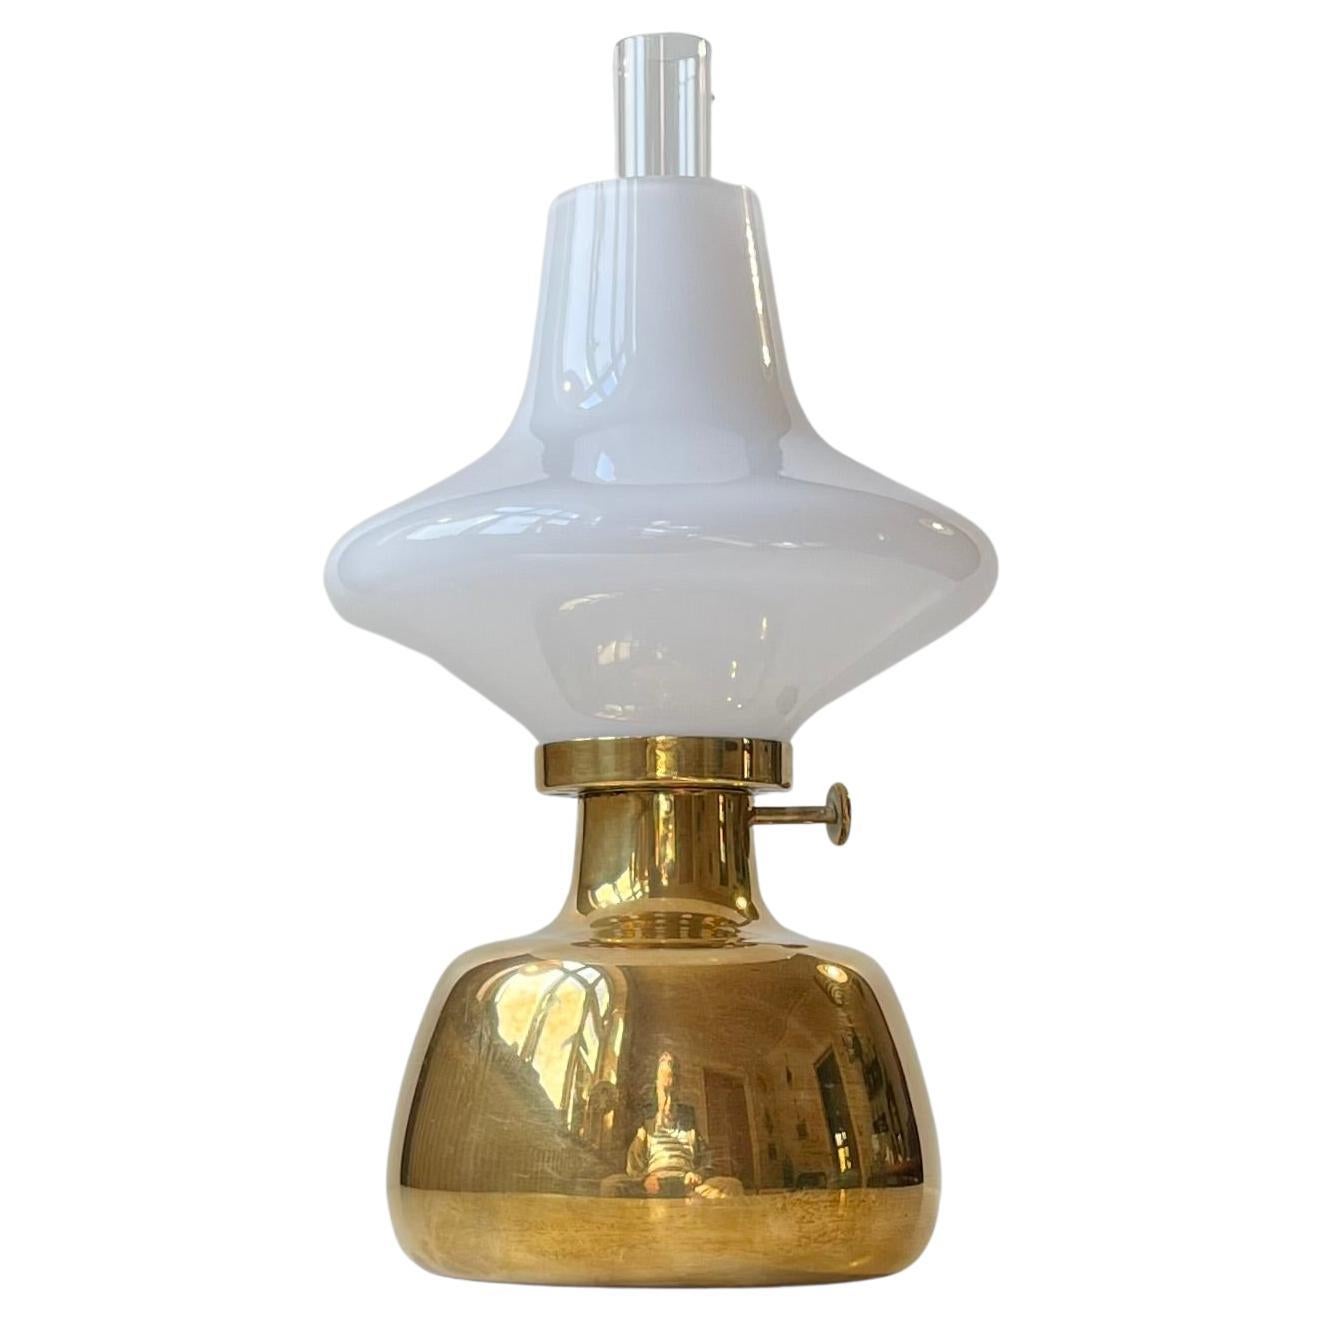 Henning Koppel Vintage Petronella Öl-Tischlampe von Louis Poulsen